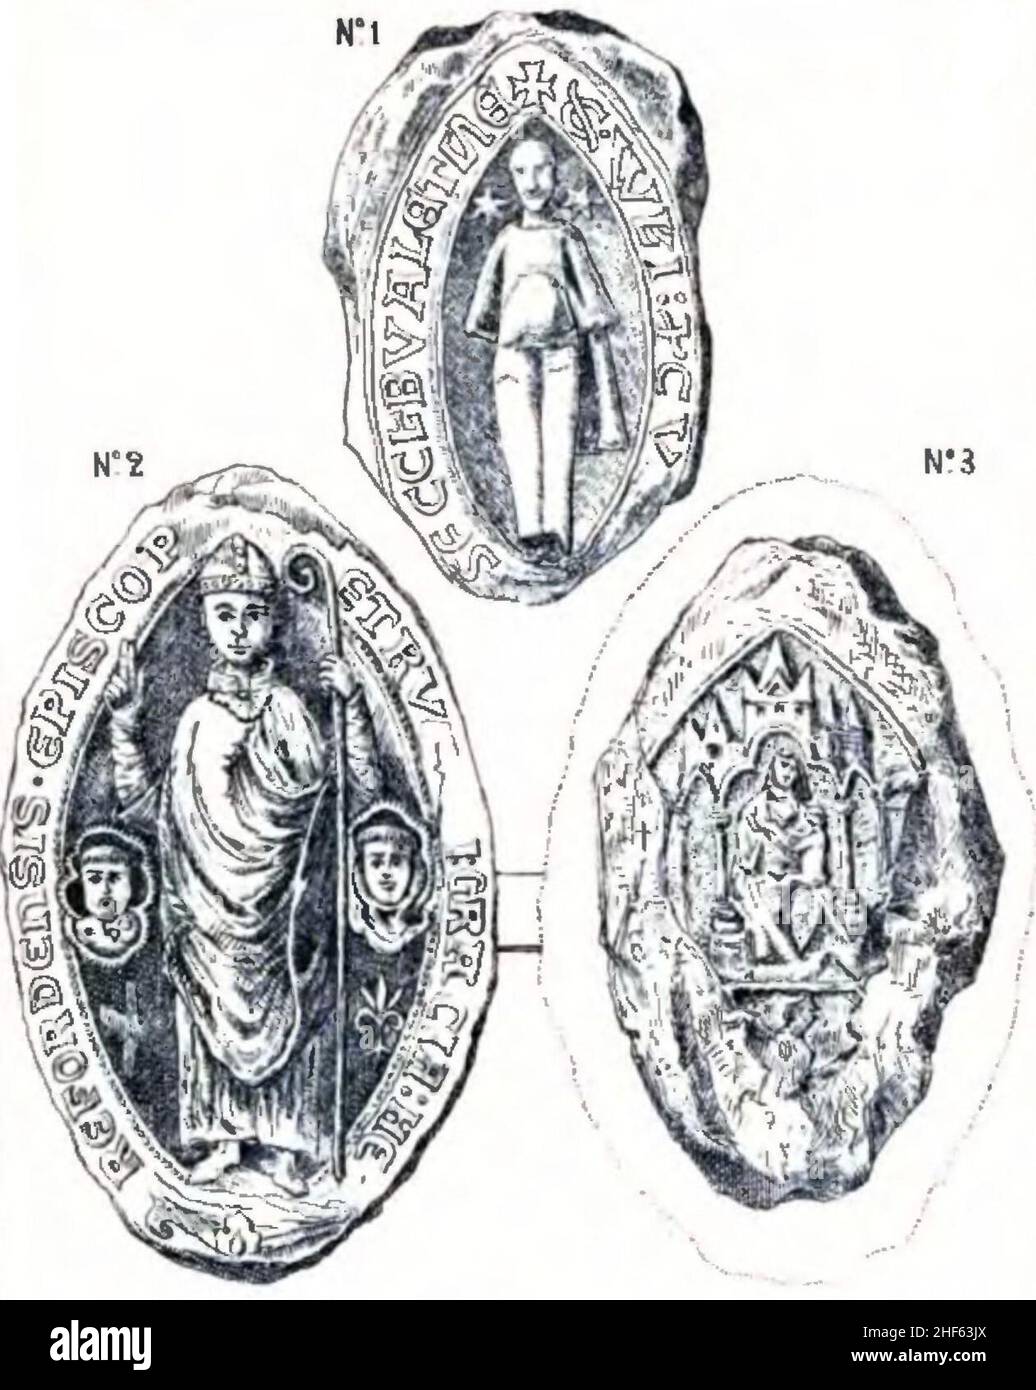 Sceaux extrait de Les Savoyards en Angleterre au XIIIe siècle et Pierre d’Aigueblanche Évêque d’Héreford. Foto Stock